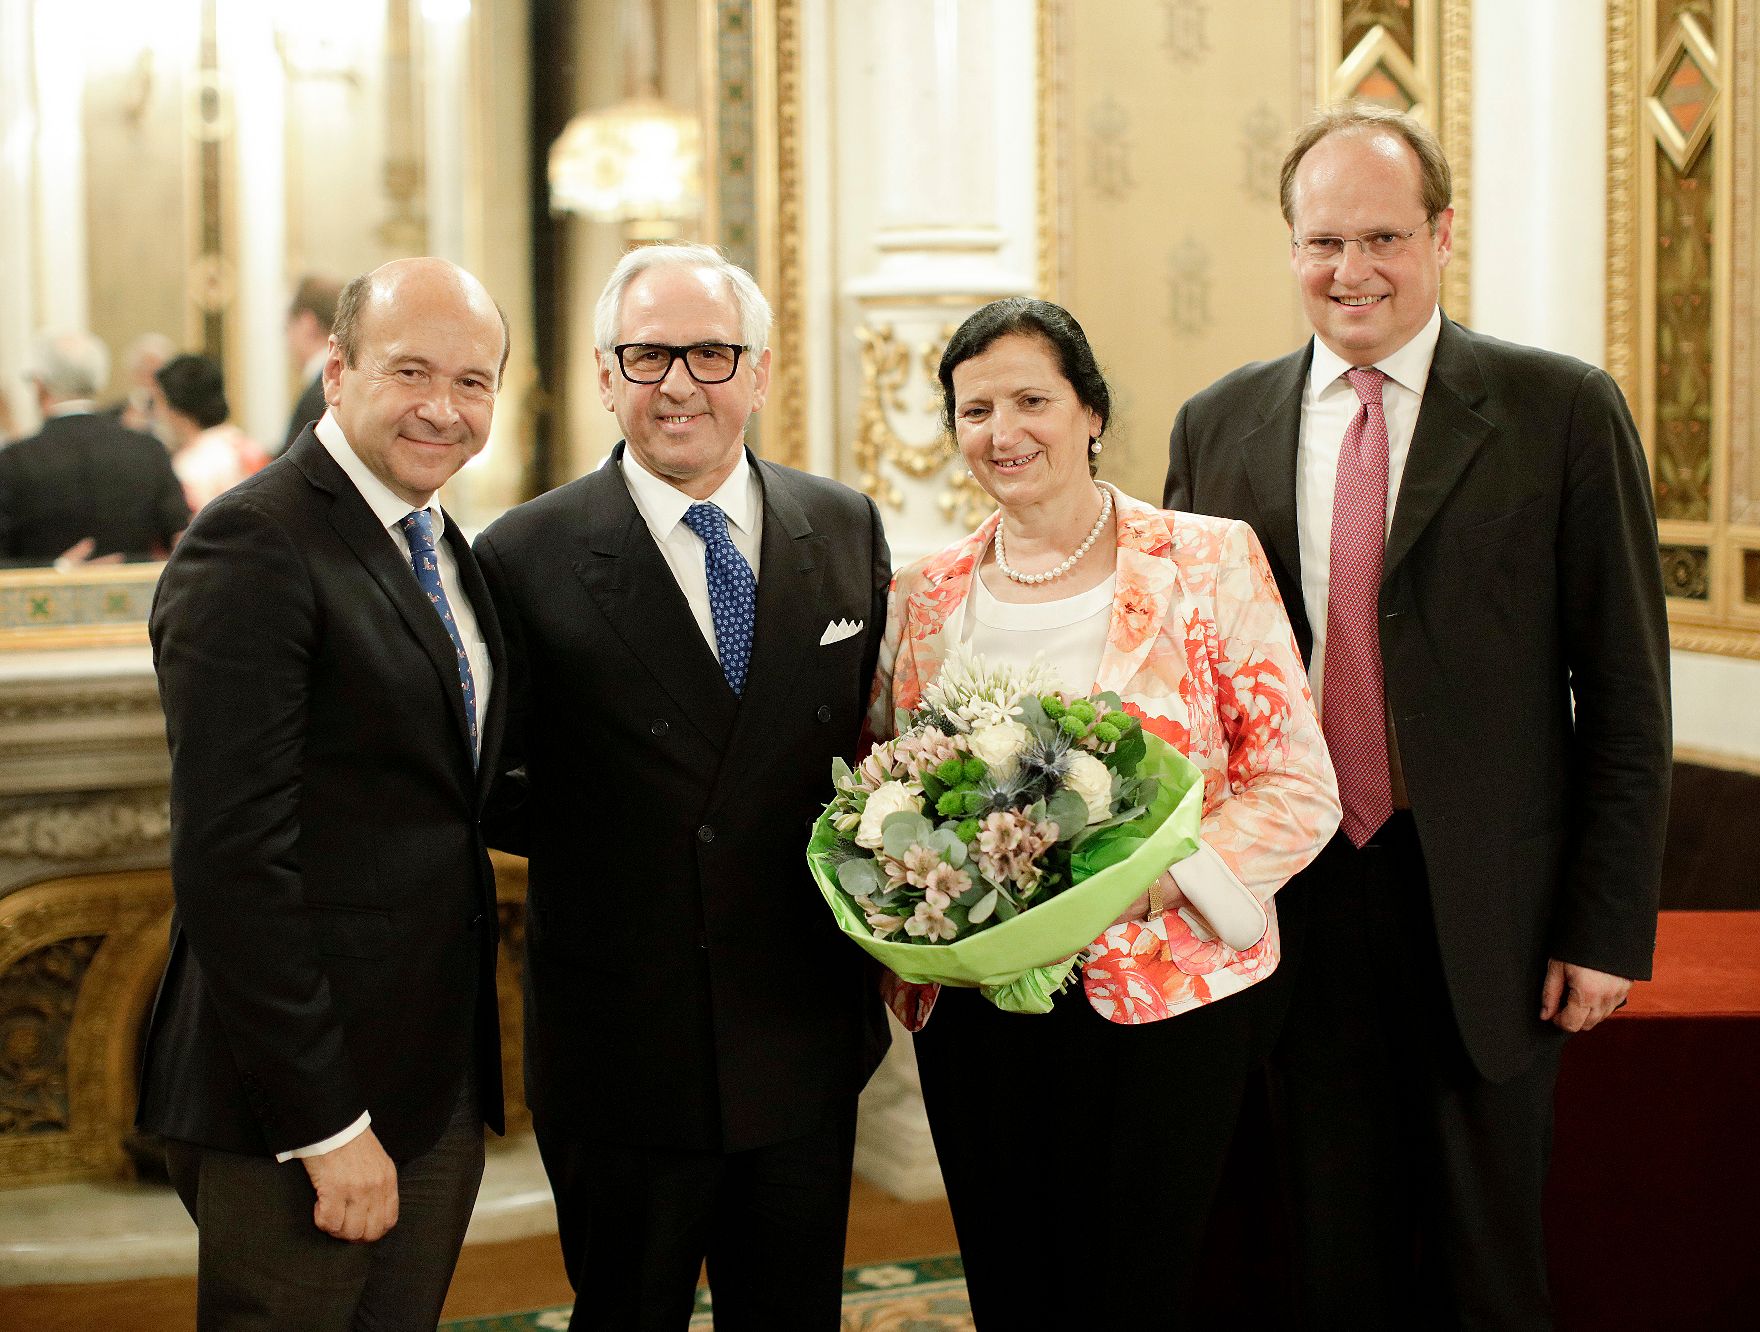 Am 21. Juni 2018 fand die Überreichung des Goldenen Ehrenzeichens für Verdienste um die Republik Österreich an Aki Nuredini (2.v.l.) statt. Im Bild mit dem Direktor der Staatsoper und Laudator Dominique Meyer (l.) und seiner Gattin (3.v.l.).